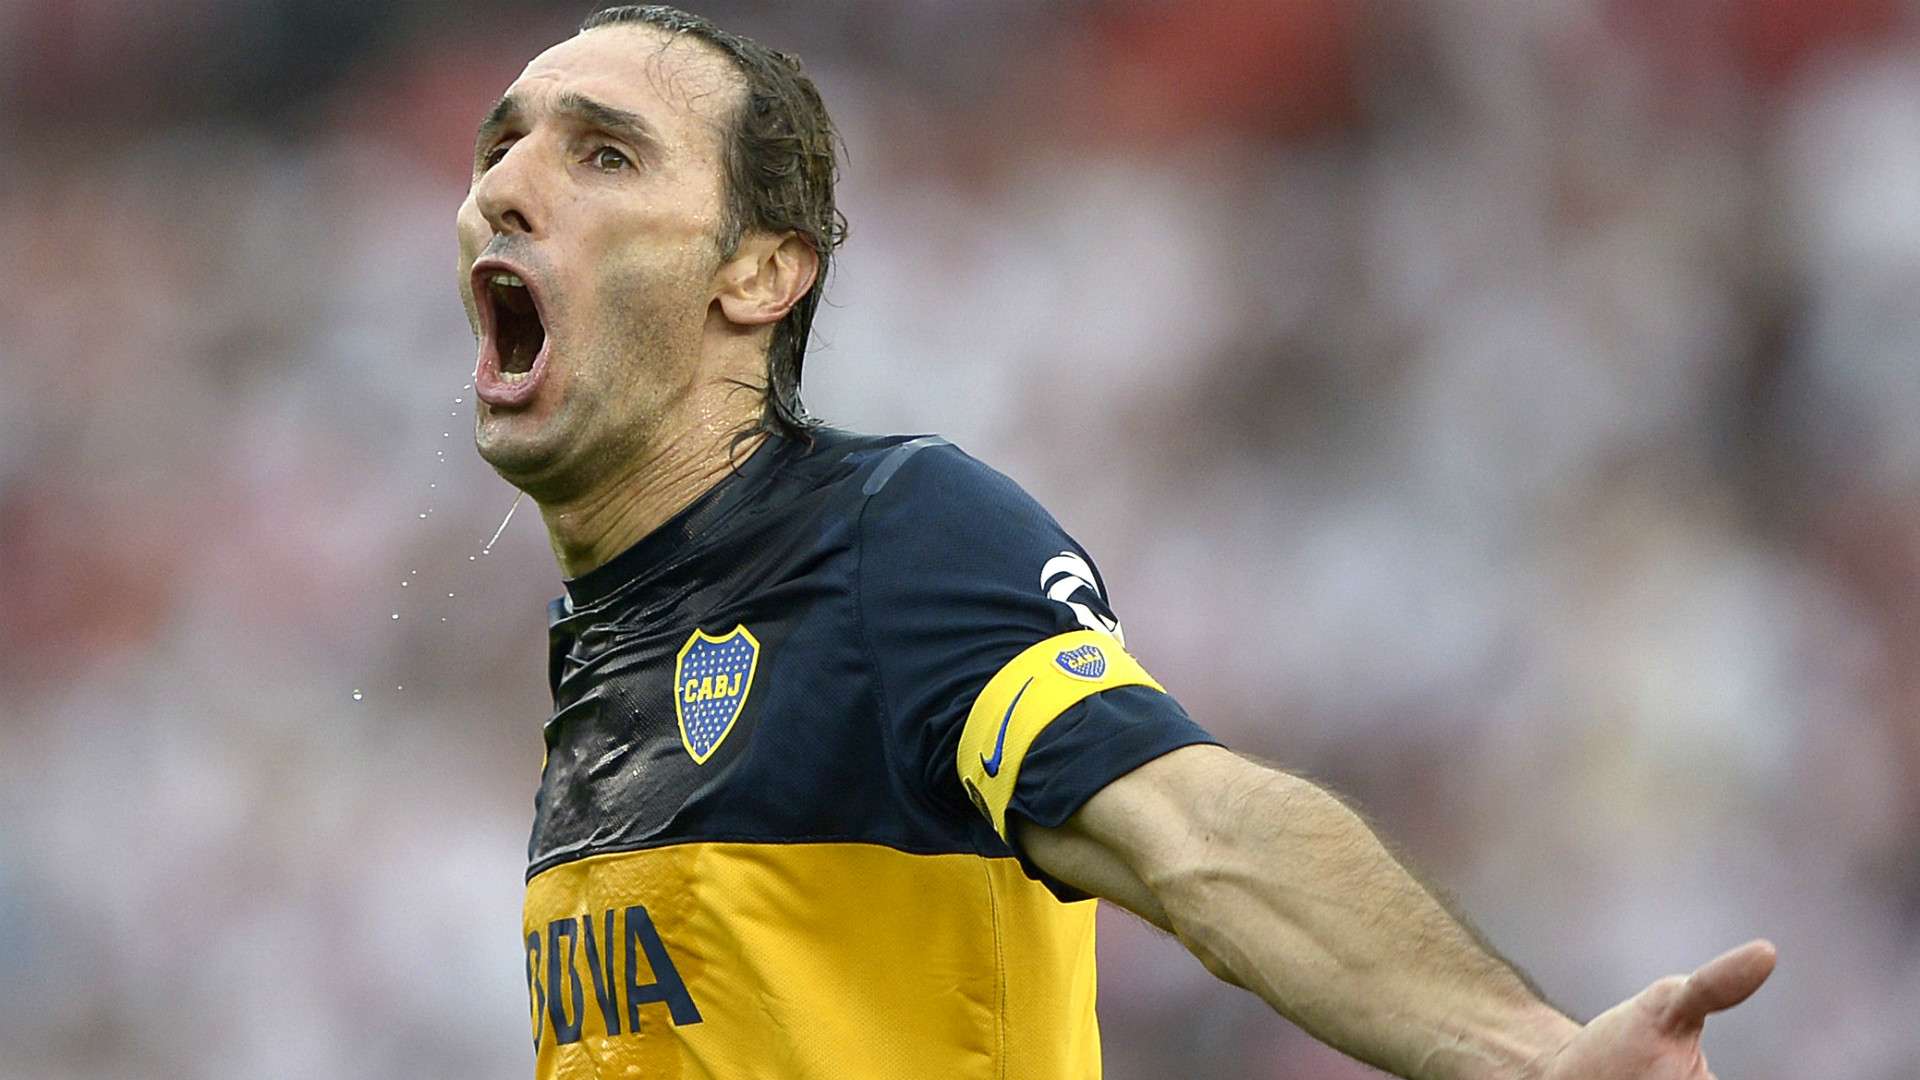 Rolando Schiavi Boca Juniors 2012